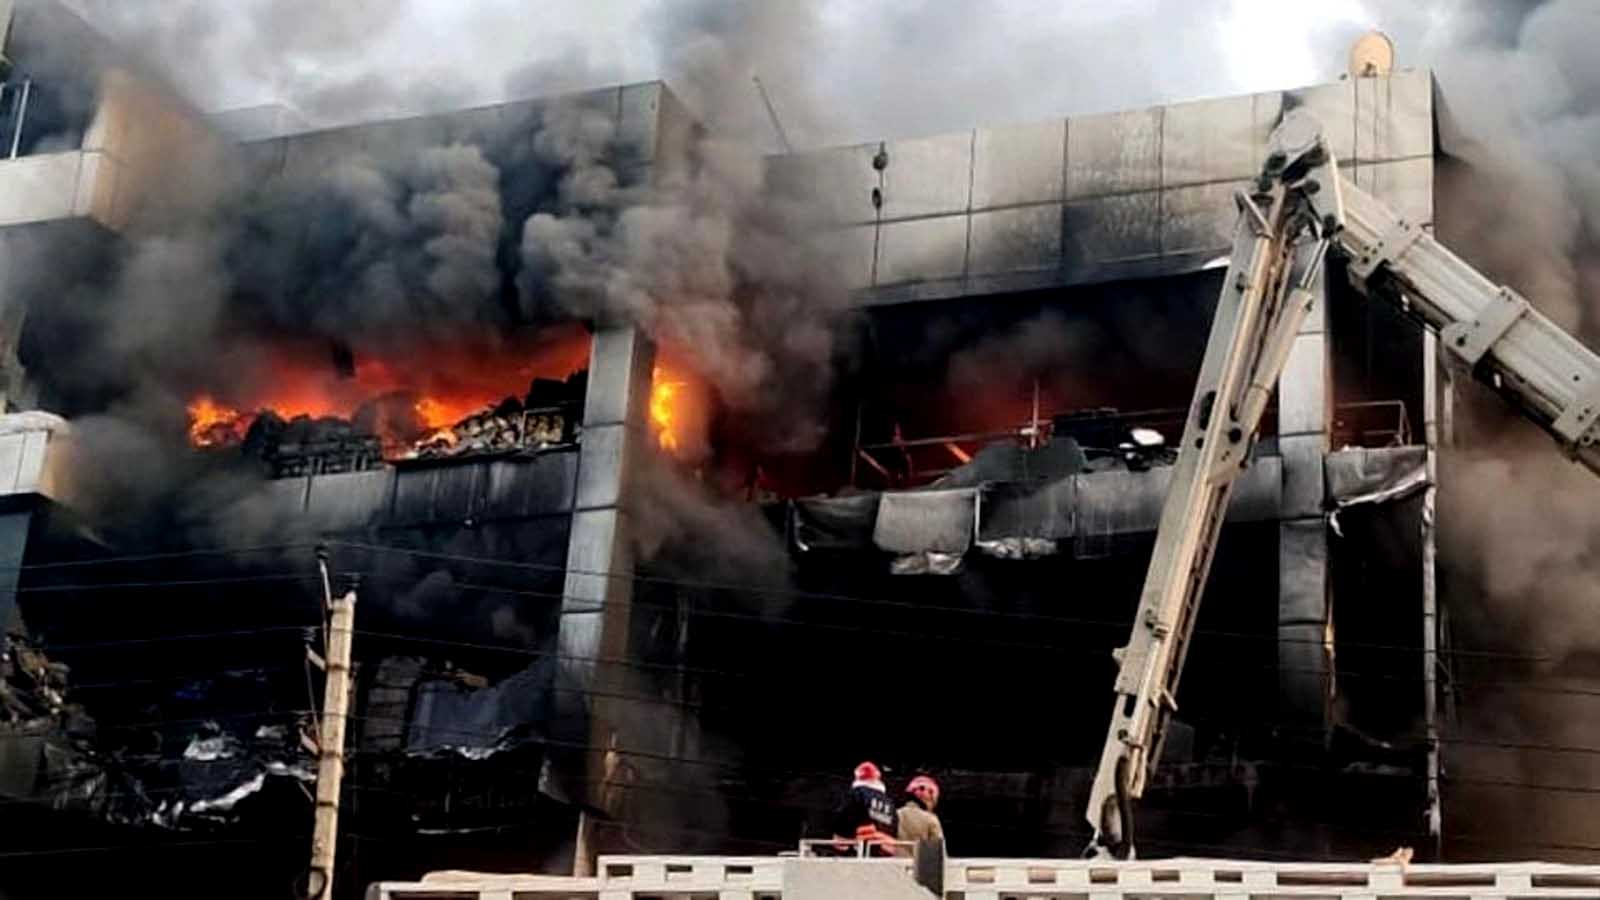 दिल्लीको व्यावसायिक भवनमा अगालागी, २७ जनाको मृत्यु